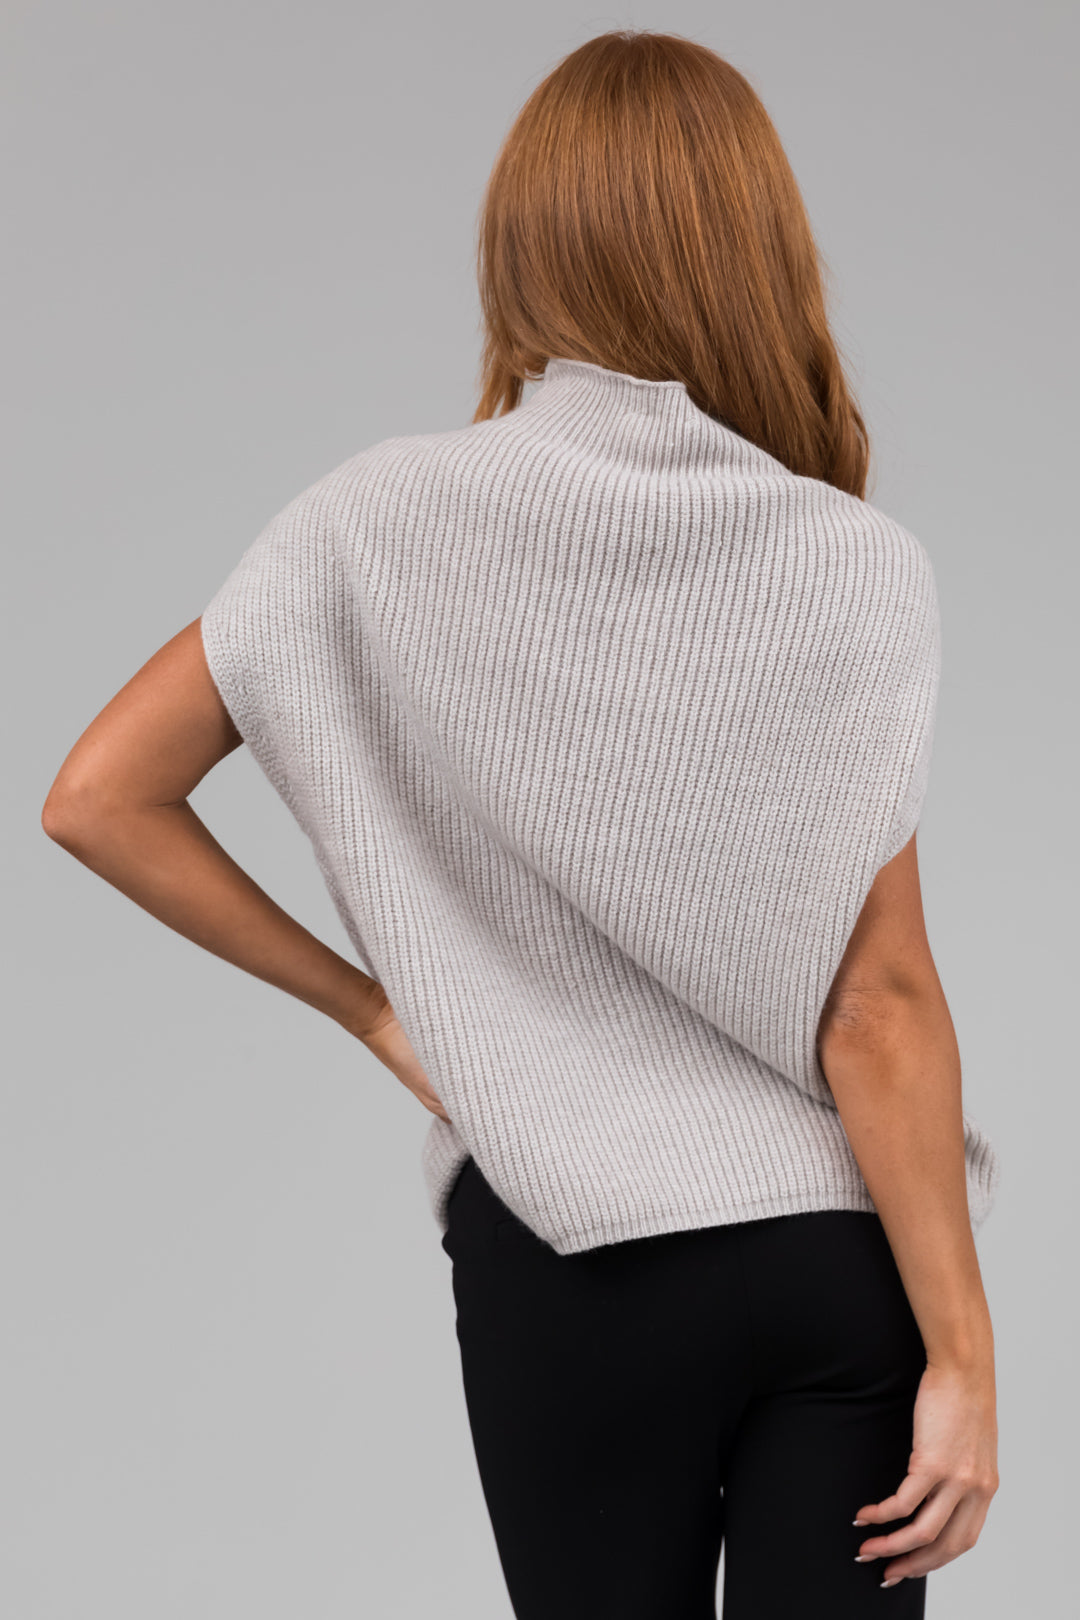 Heather Grey Mock Neck Stretchy Knit Sweater Vest